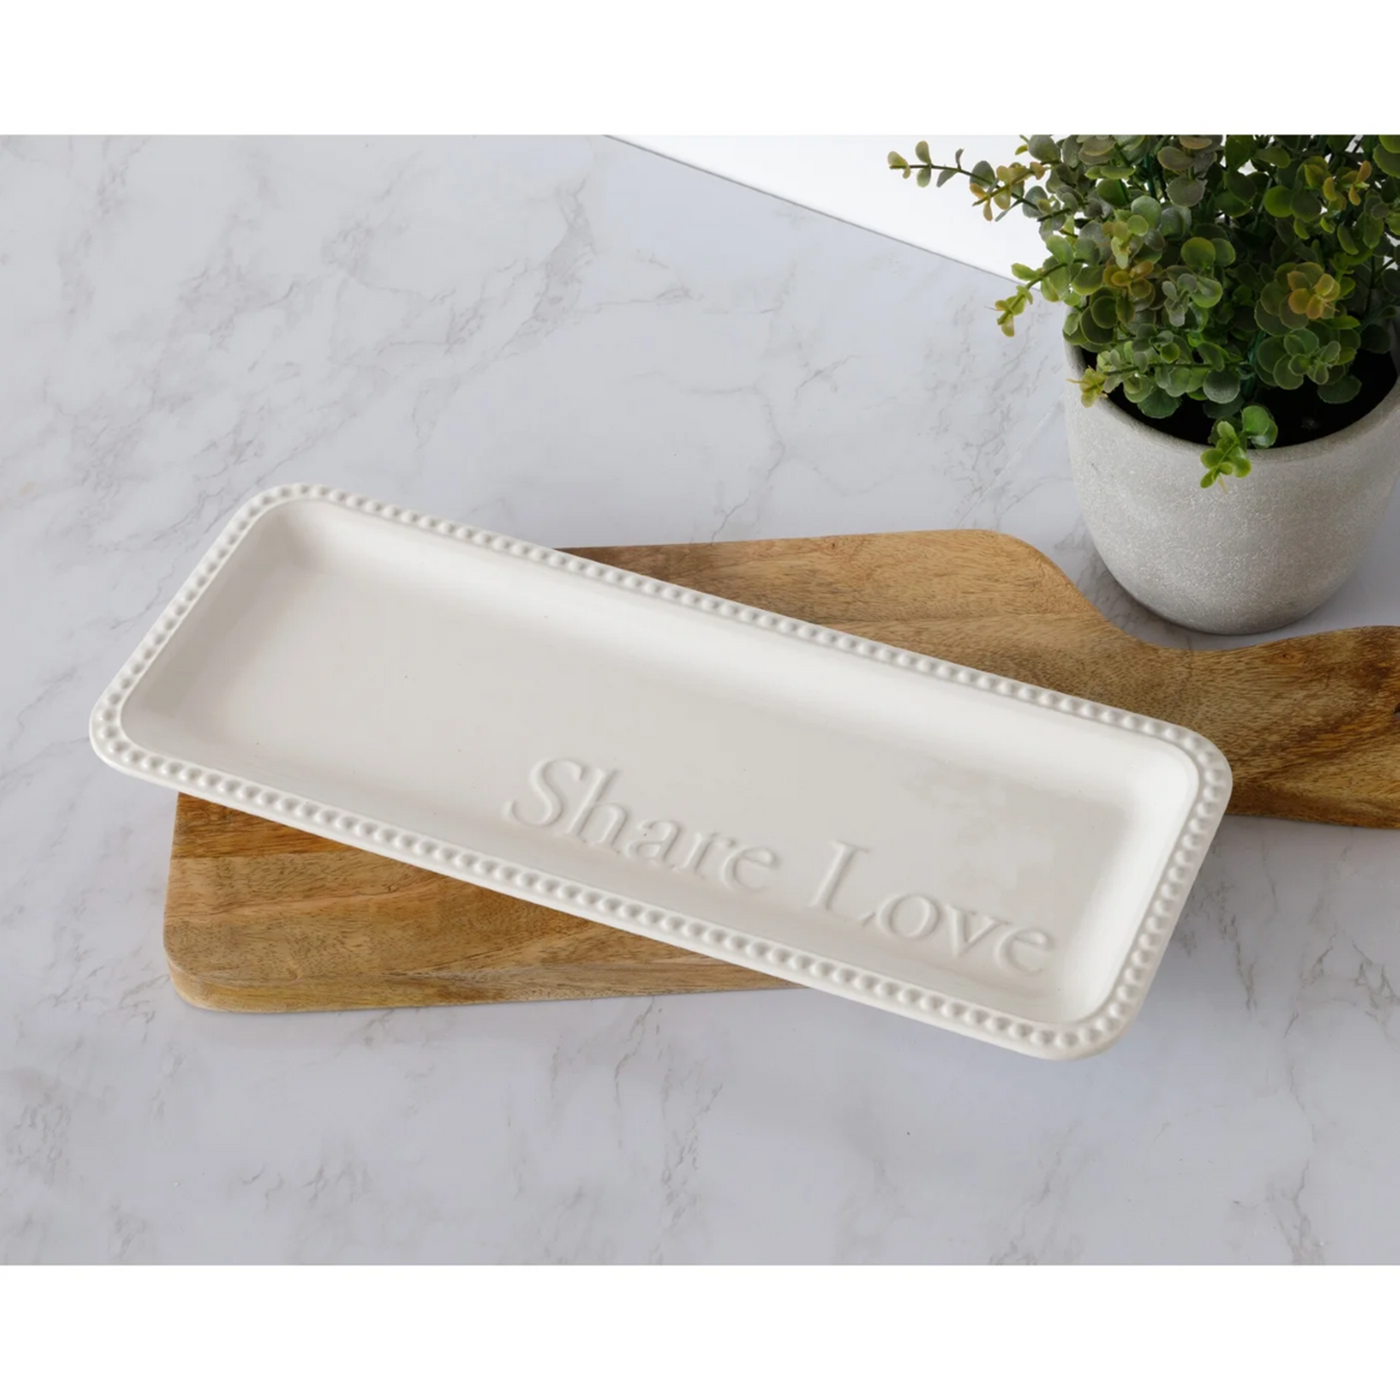 Share Love White Beaded Serving Platter